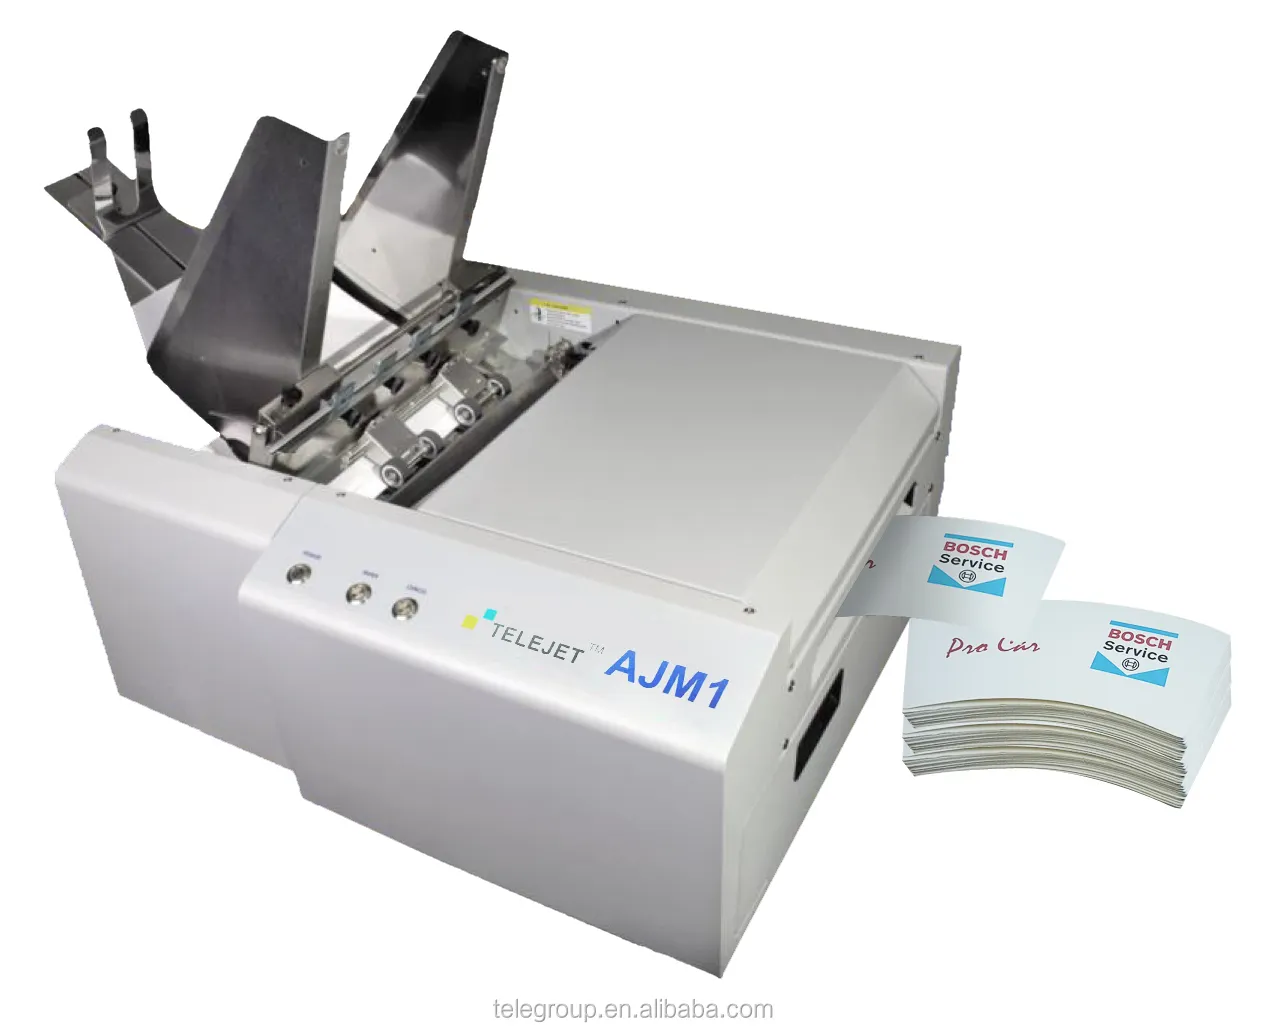 2022 במהירות גבוהה שולחן עבודה מלא צבע ajm1 נייר כוס אוהדי מדפסת מכונת נייר כוס מדפסת מכונת יצרן